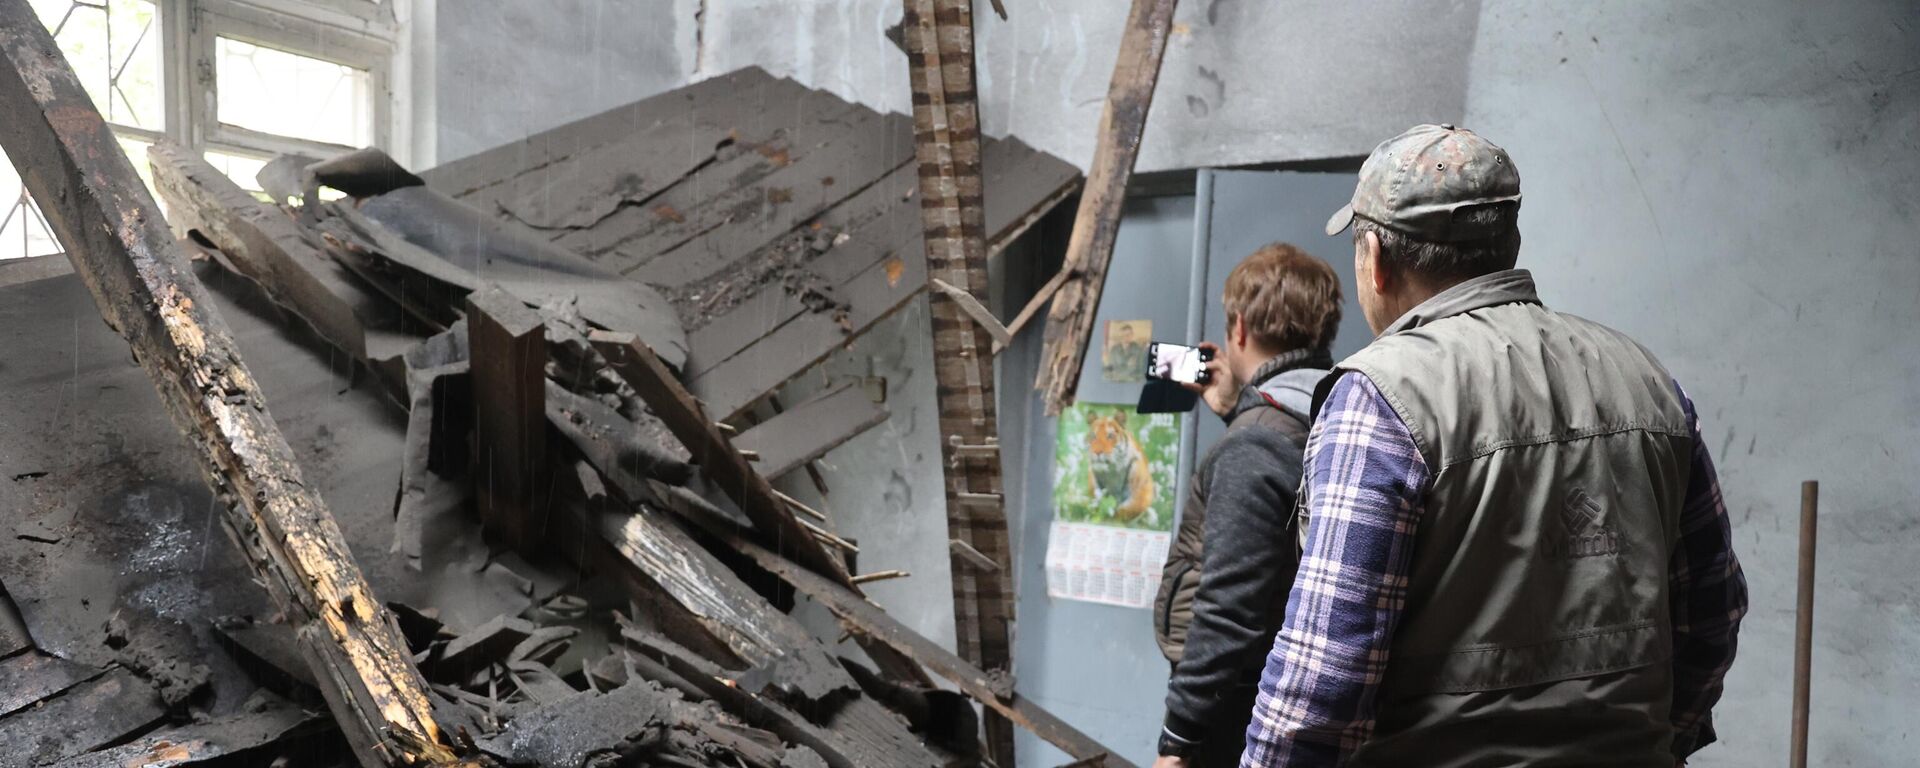 تداعيات قصف القوات المسلحة الأوكرانية في دونيتسك، جمهورية دونيتسك الشعبية 19 مايو 2022 - سبوتنيك عربي, 1920, 20.05.2022